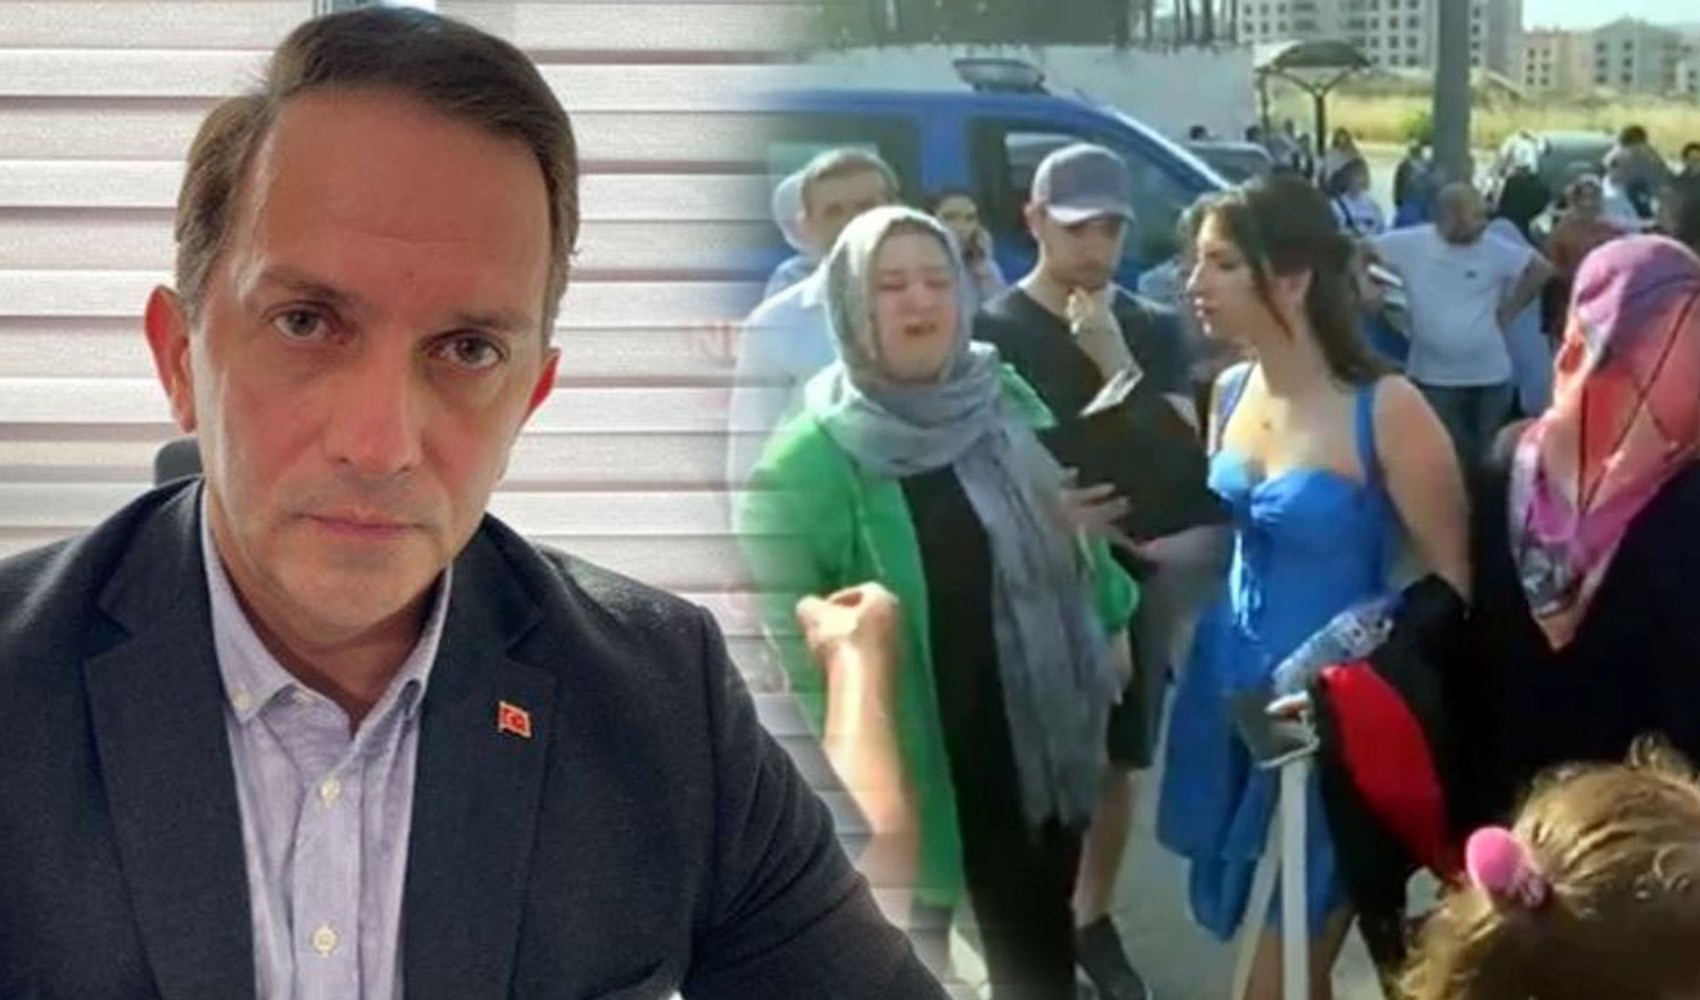 AKP'li Birinci, kıyafet skandalında partisinden farklı bir görüş savundu